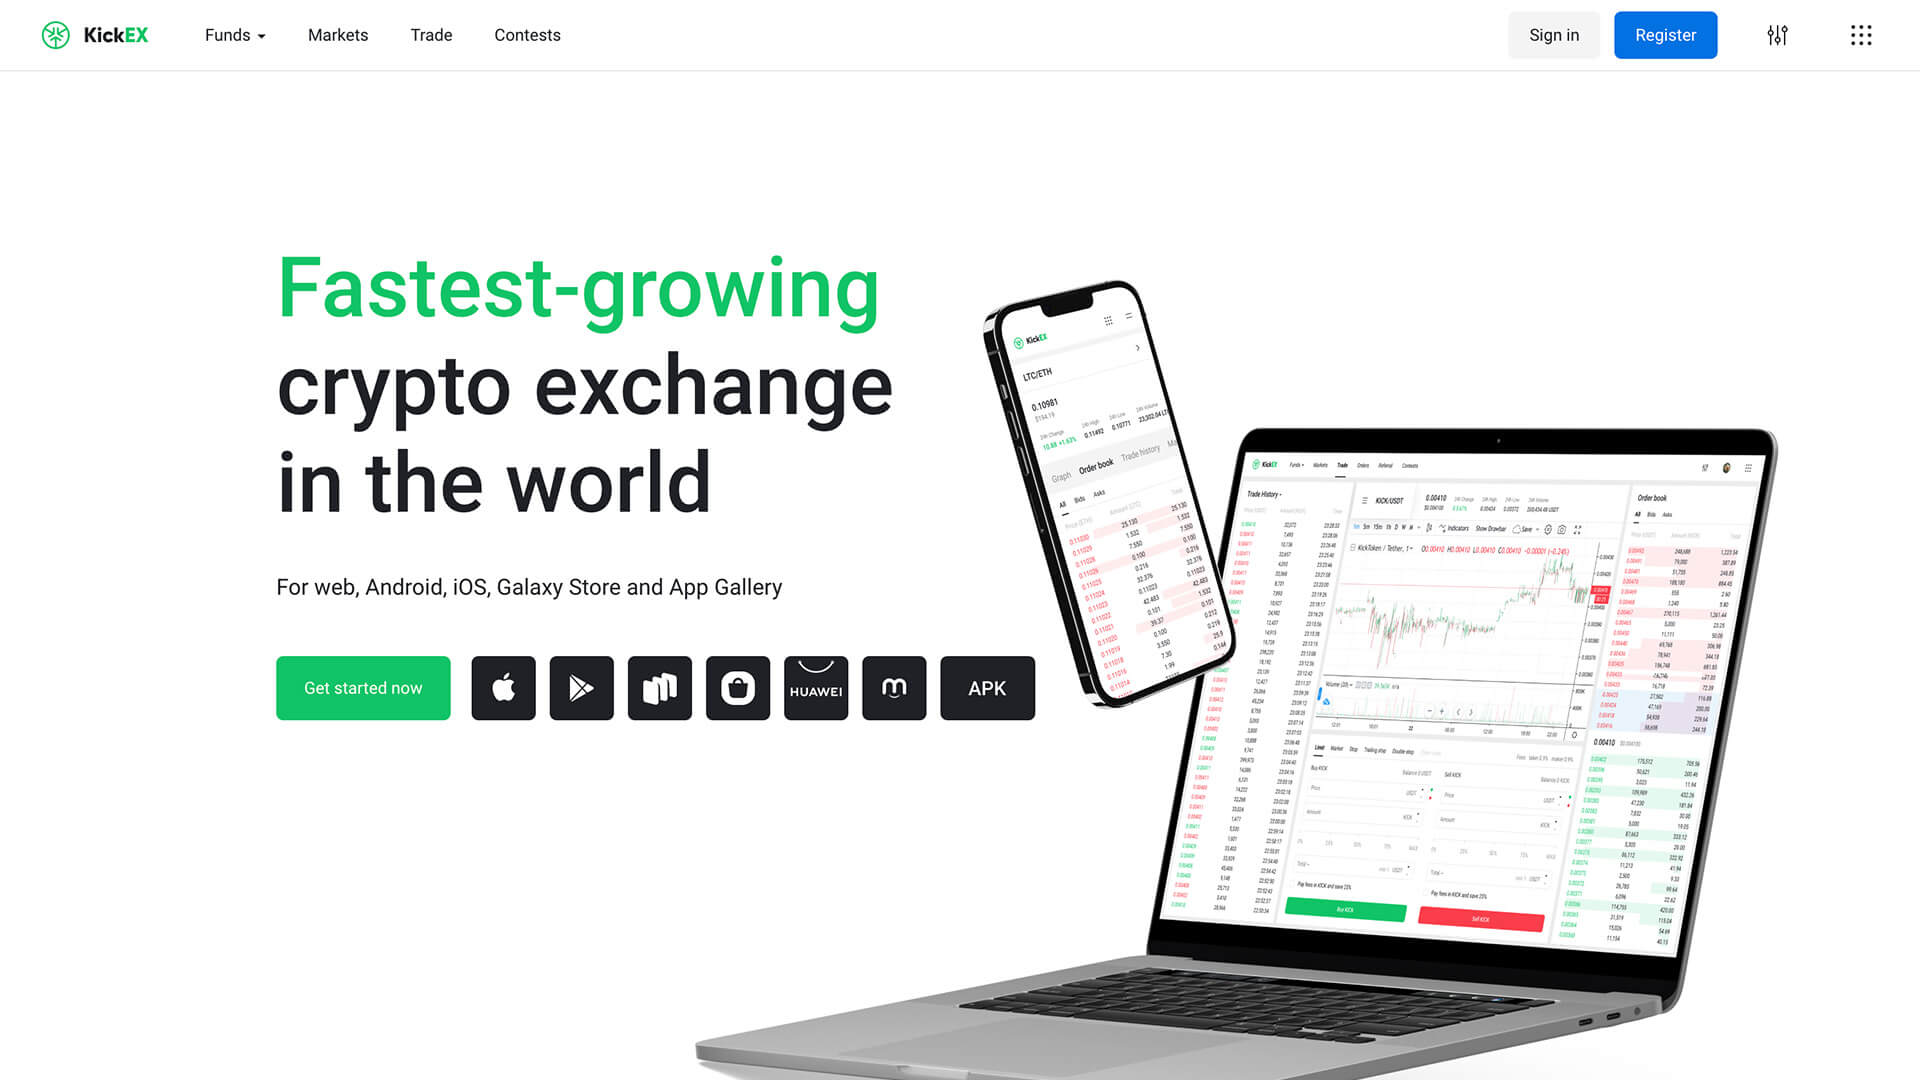 KickEX Crypto Exchange